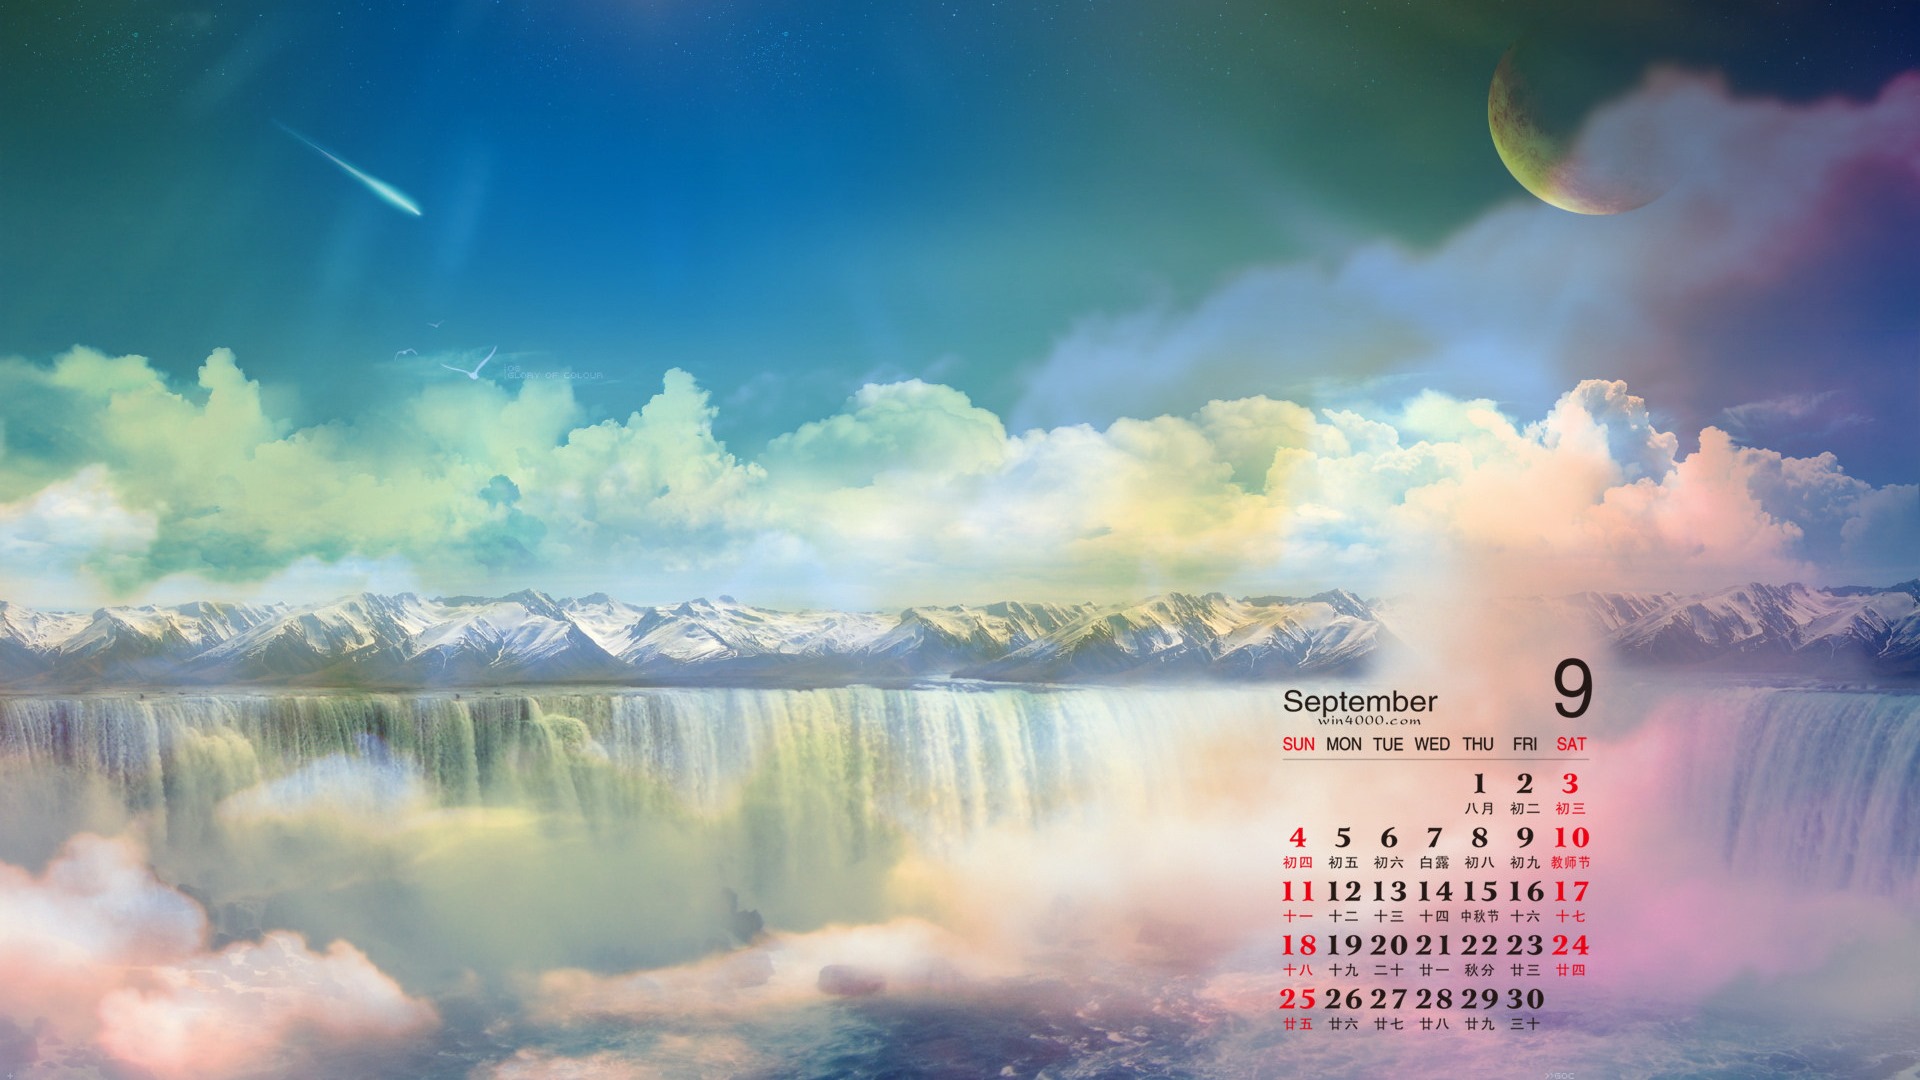 September 2016 calendar wallpaper (1) #14 - 1920x1080